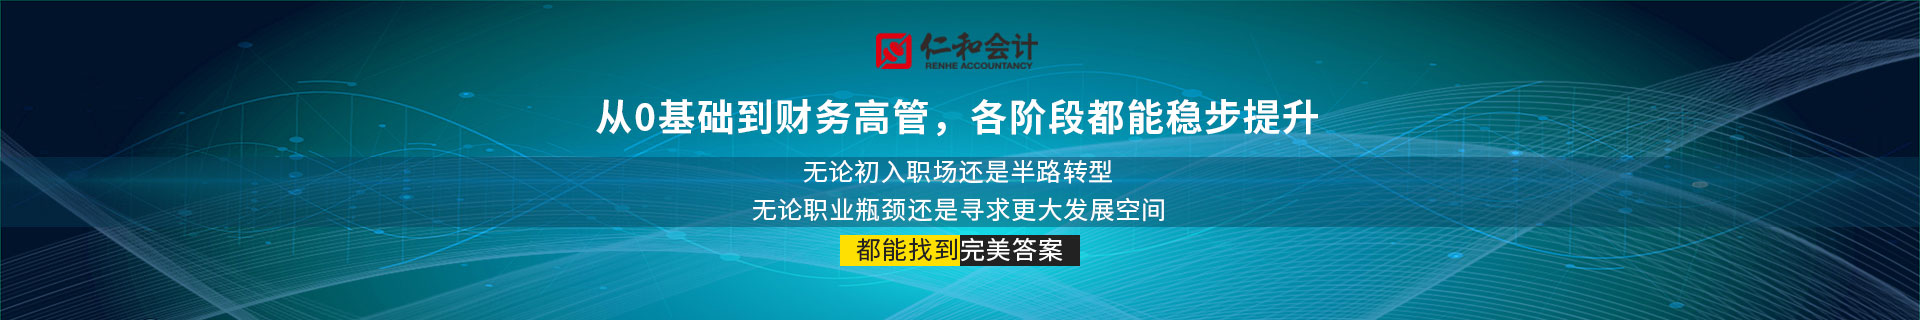 上海闵行颛桥仁和会计培训机构